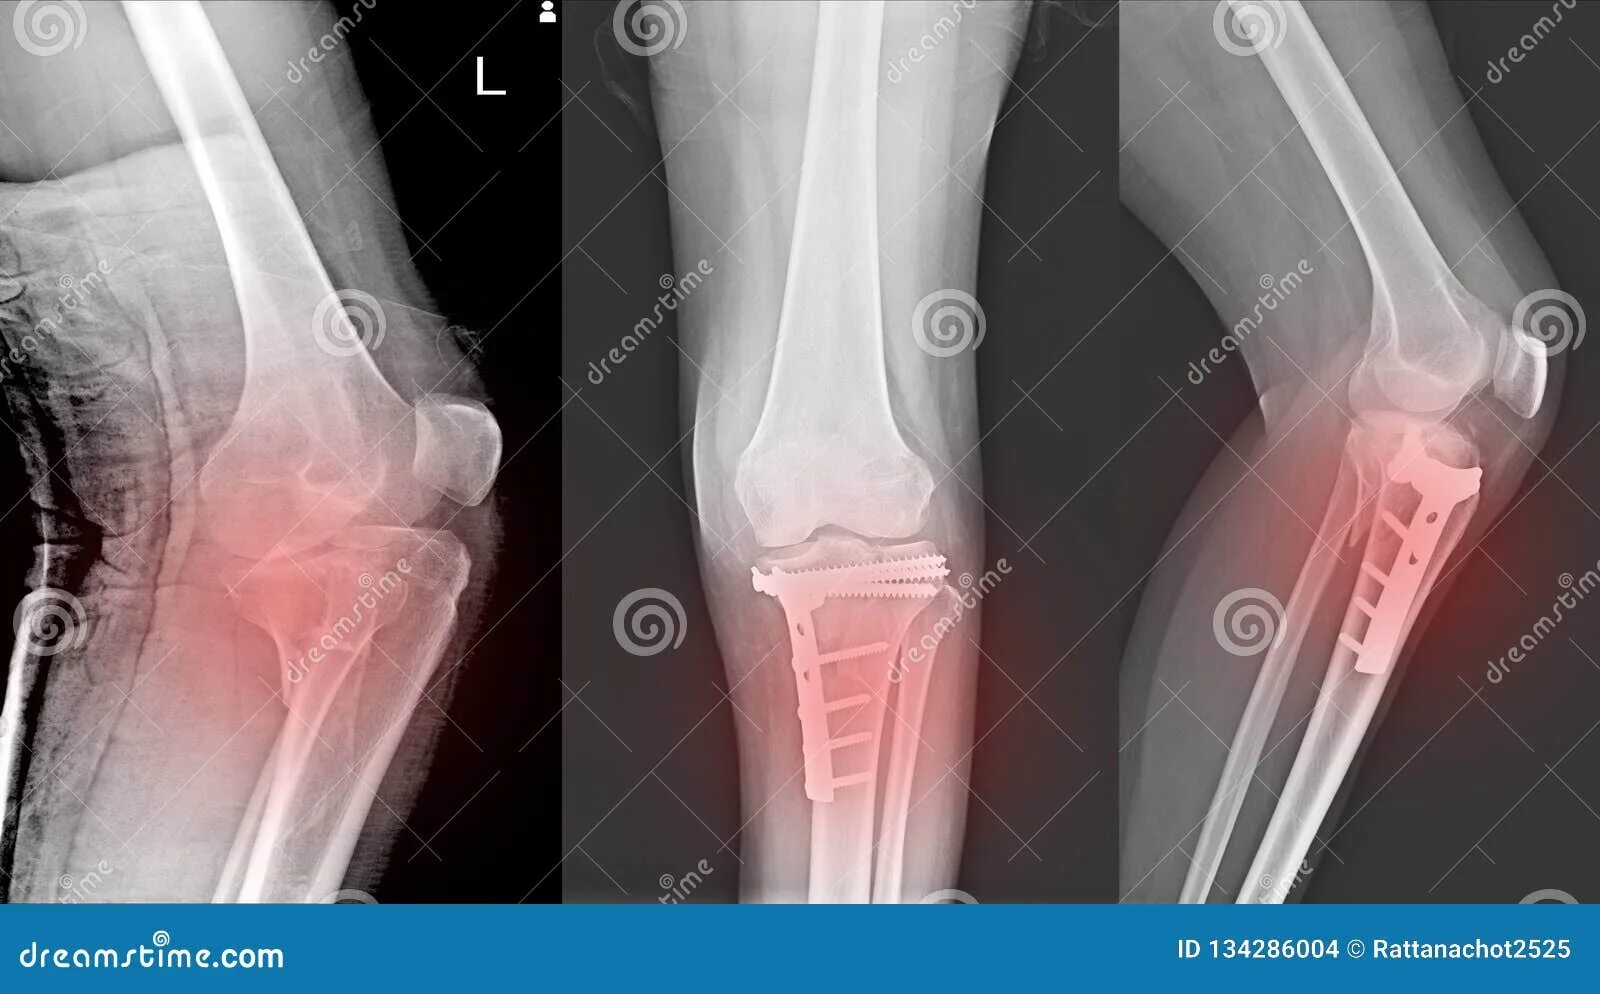 Перелом надколенника рентген. Перелом надколенника остеосинтез. Перелом коленной чашечки рентген. Коленный сустав перелом берцовая кость.